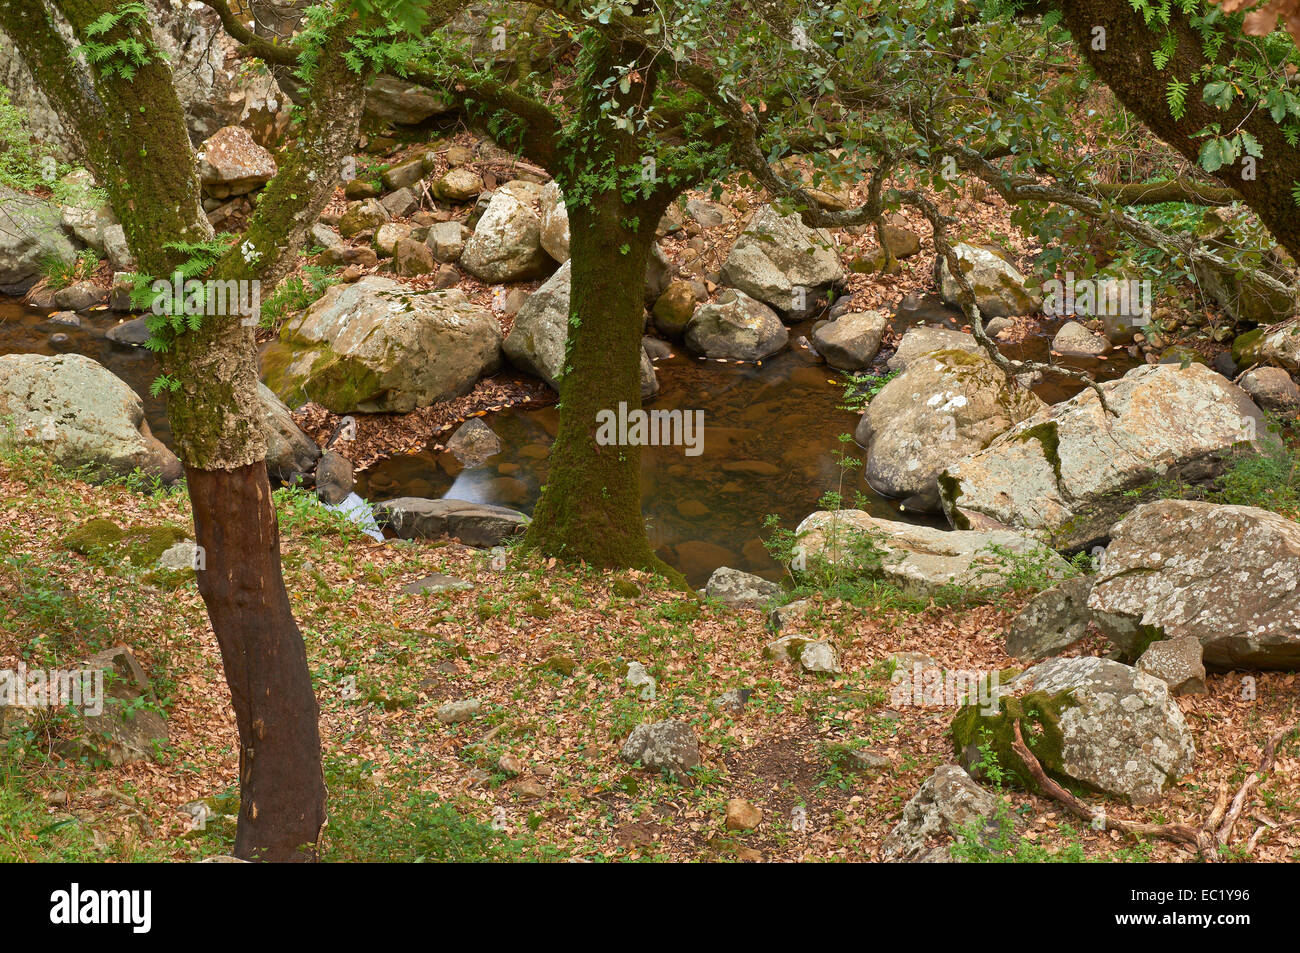 Chêne-liège (Quercus suber), la Sauceda, Parc Naturel de Los Alcornocales, la province de Malaga, Andalousie, Espagne, Europe Banque D'Images